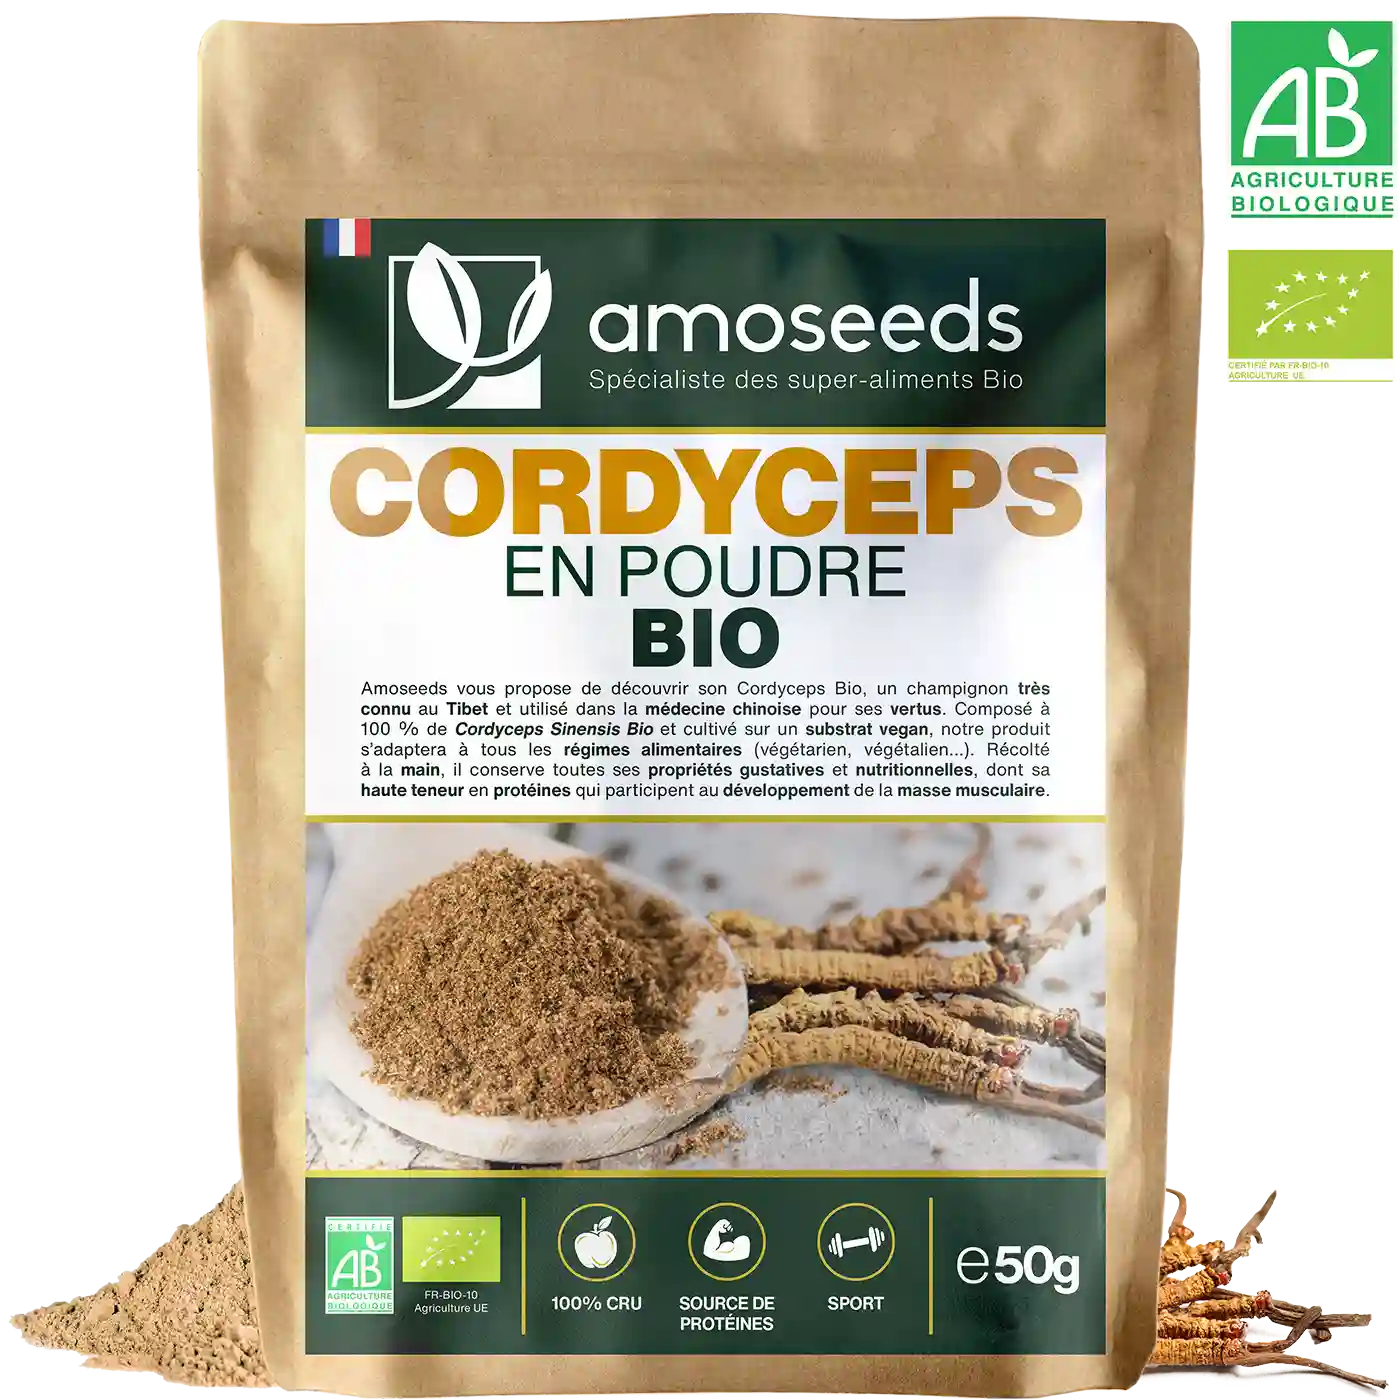 Cordyceps en Poudre Bio 50G amoseeds specialiste des super aliments Bio